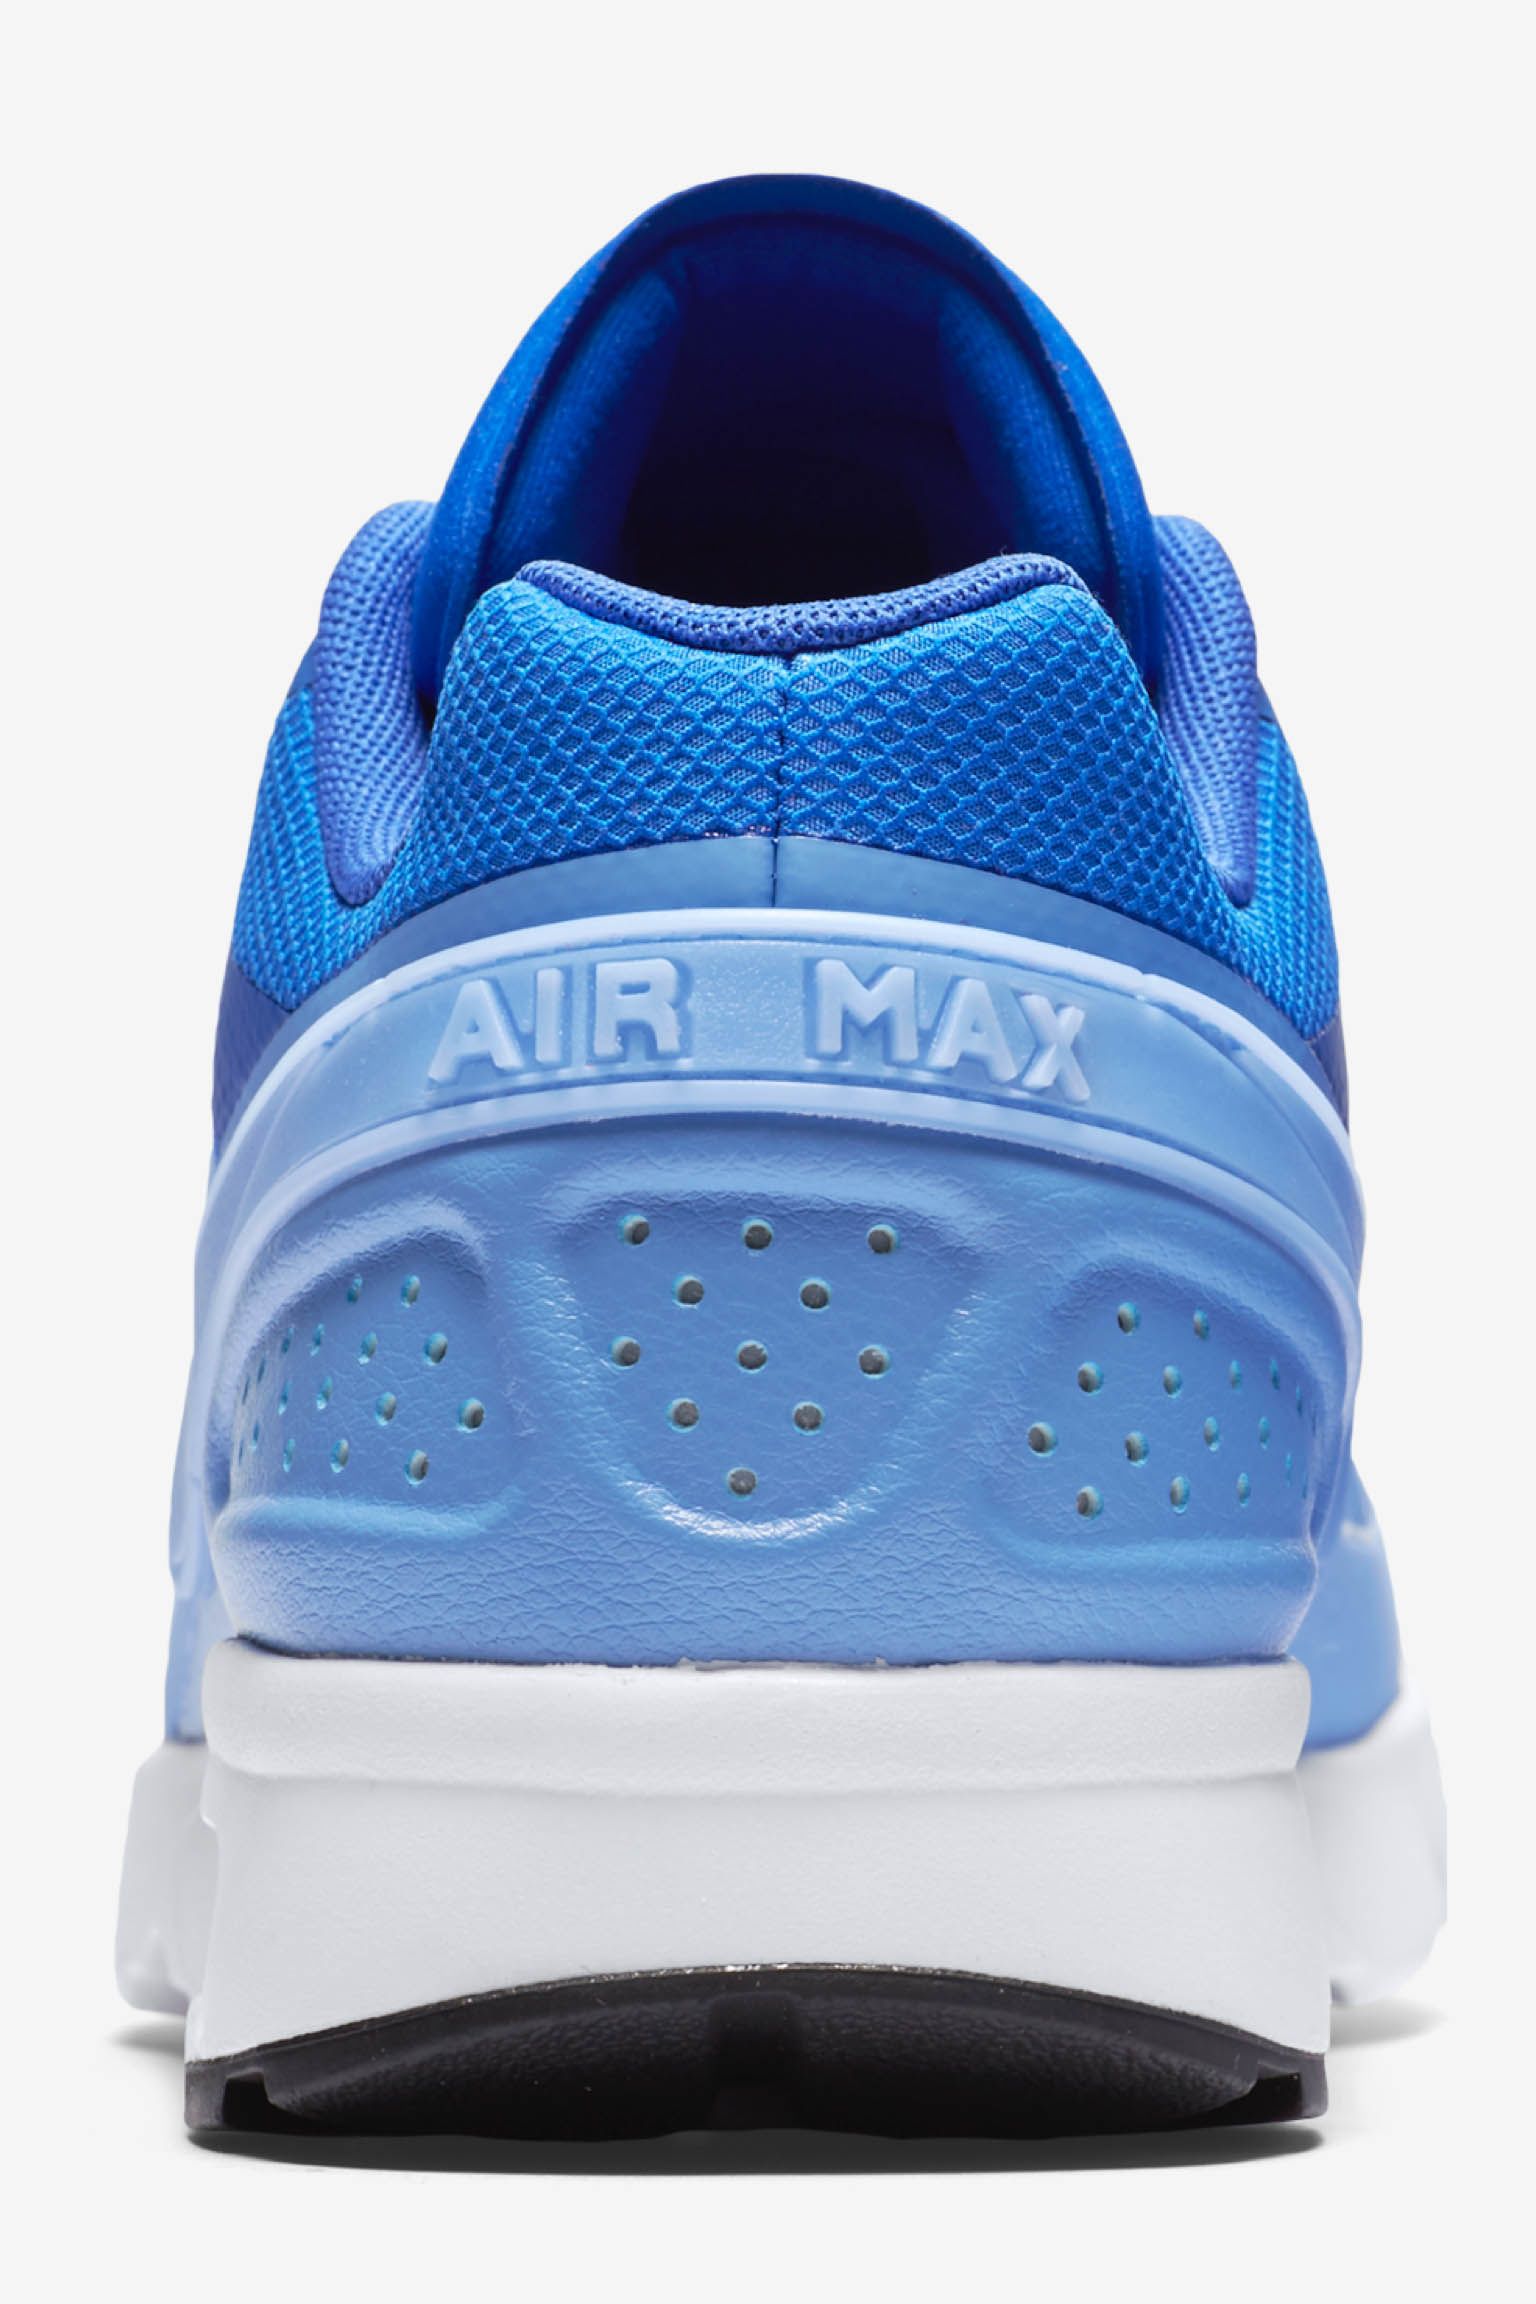 nike air max womens blue